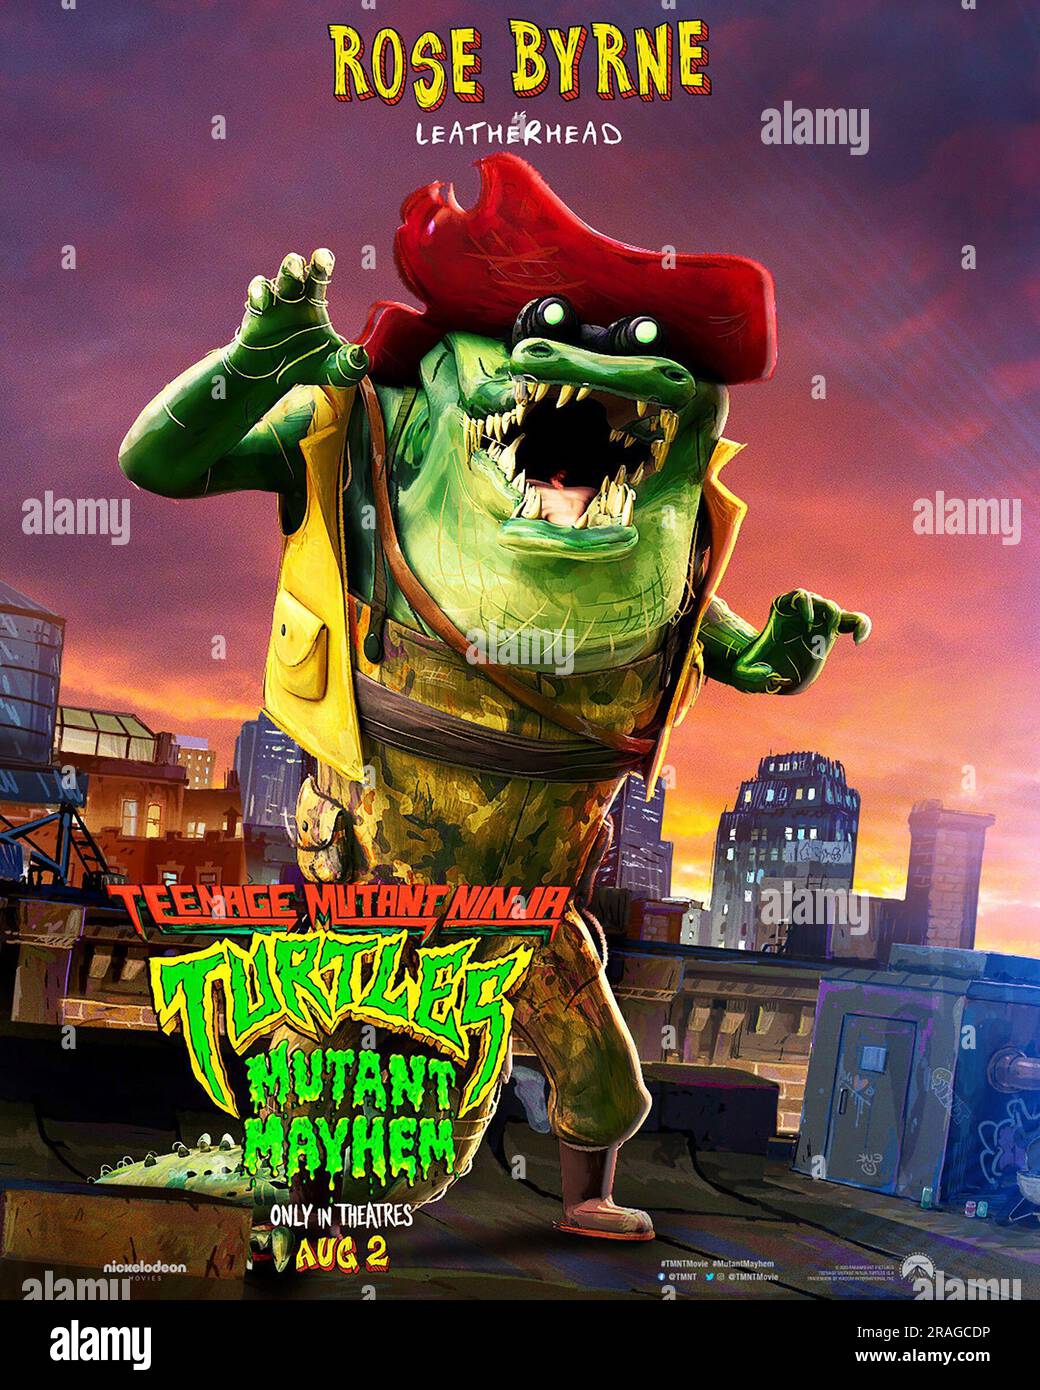 Teenage Mutant Ninja Turtles: Mutant Mayhem Character Posters